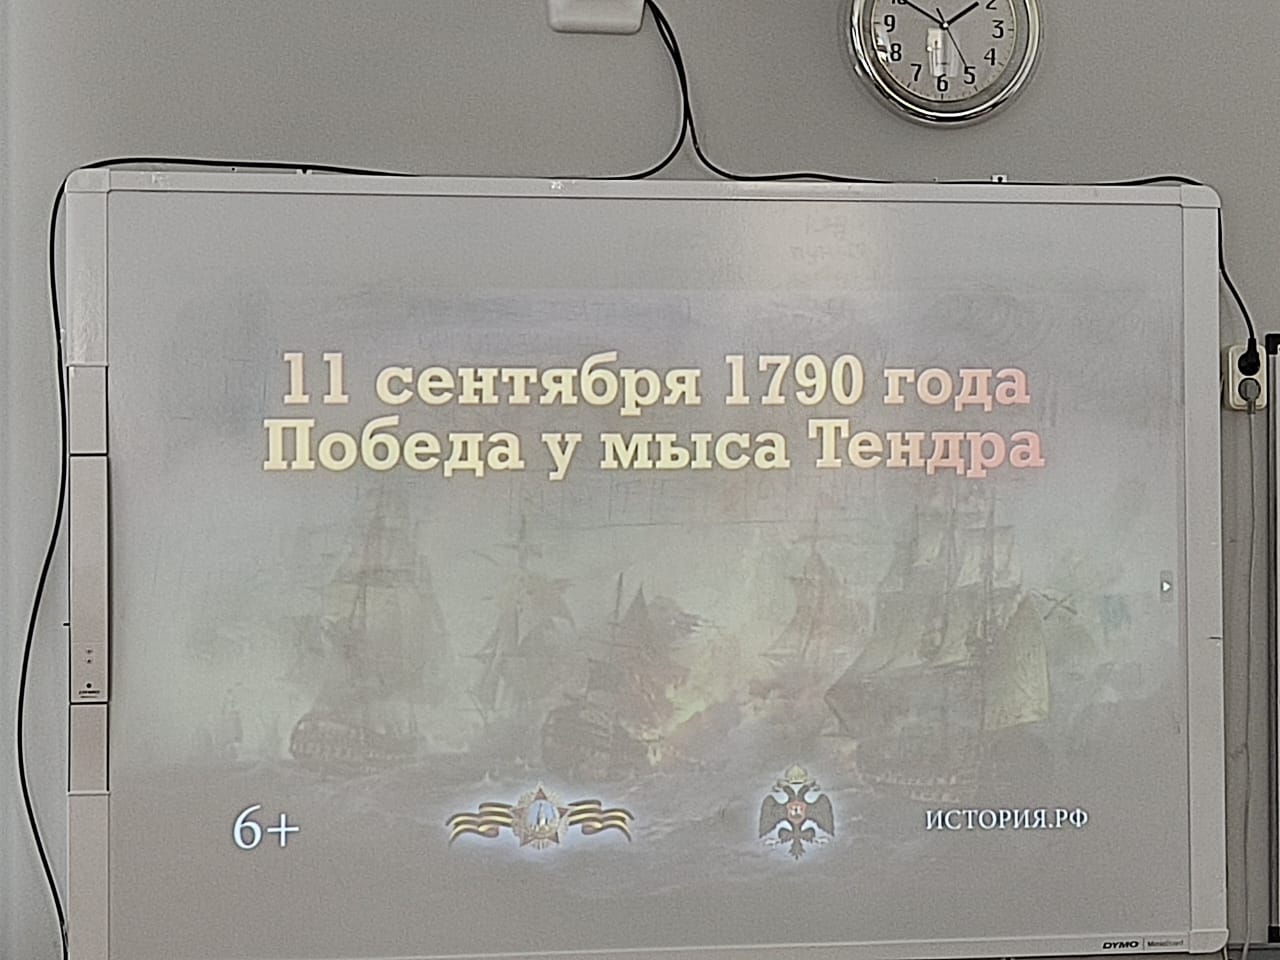 День победы русской эскадры под командованием Ф. Ф. Ушакова над турецкой эскадрой у мыса Тендра (1790 год).